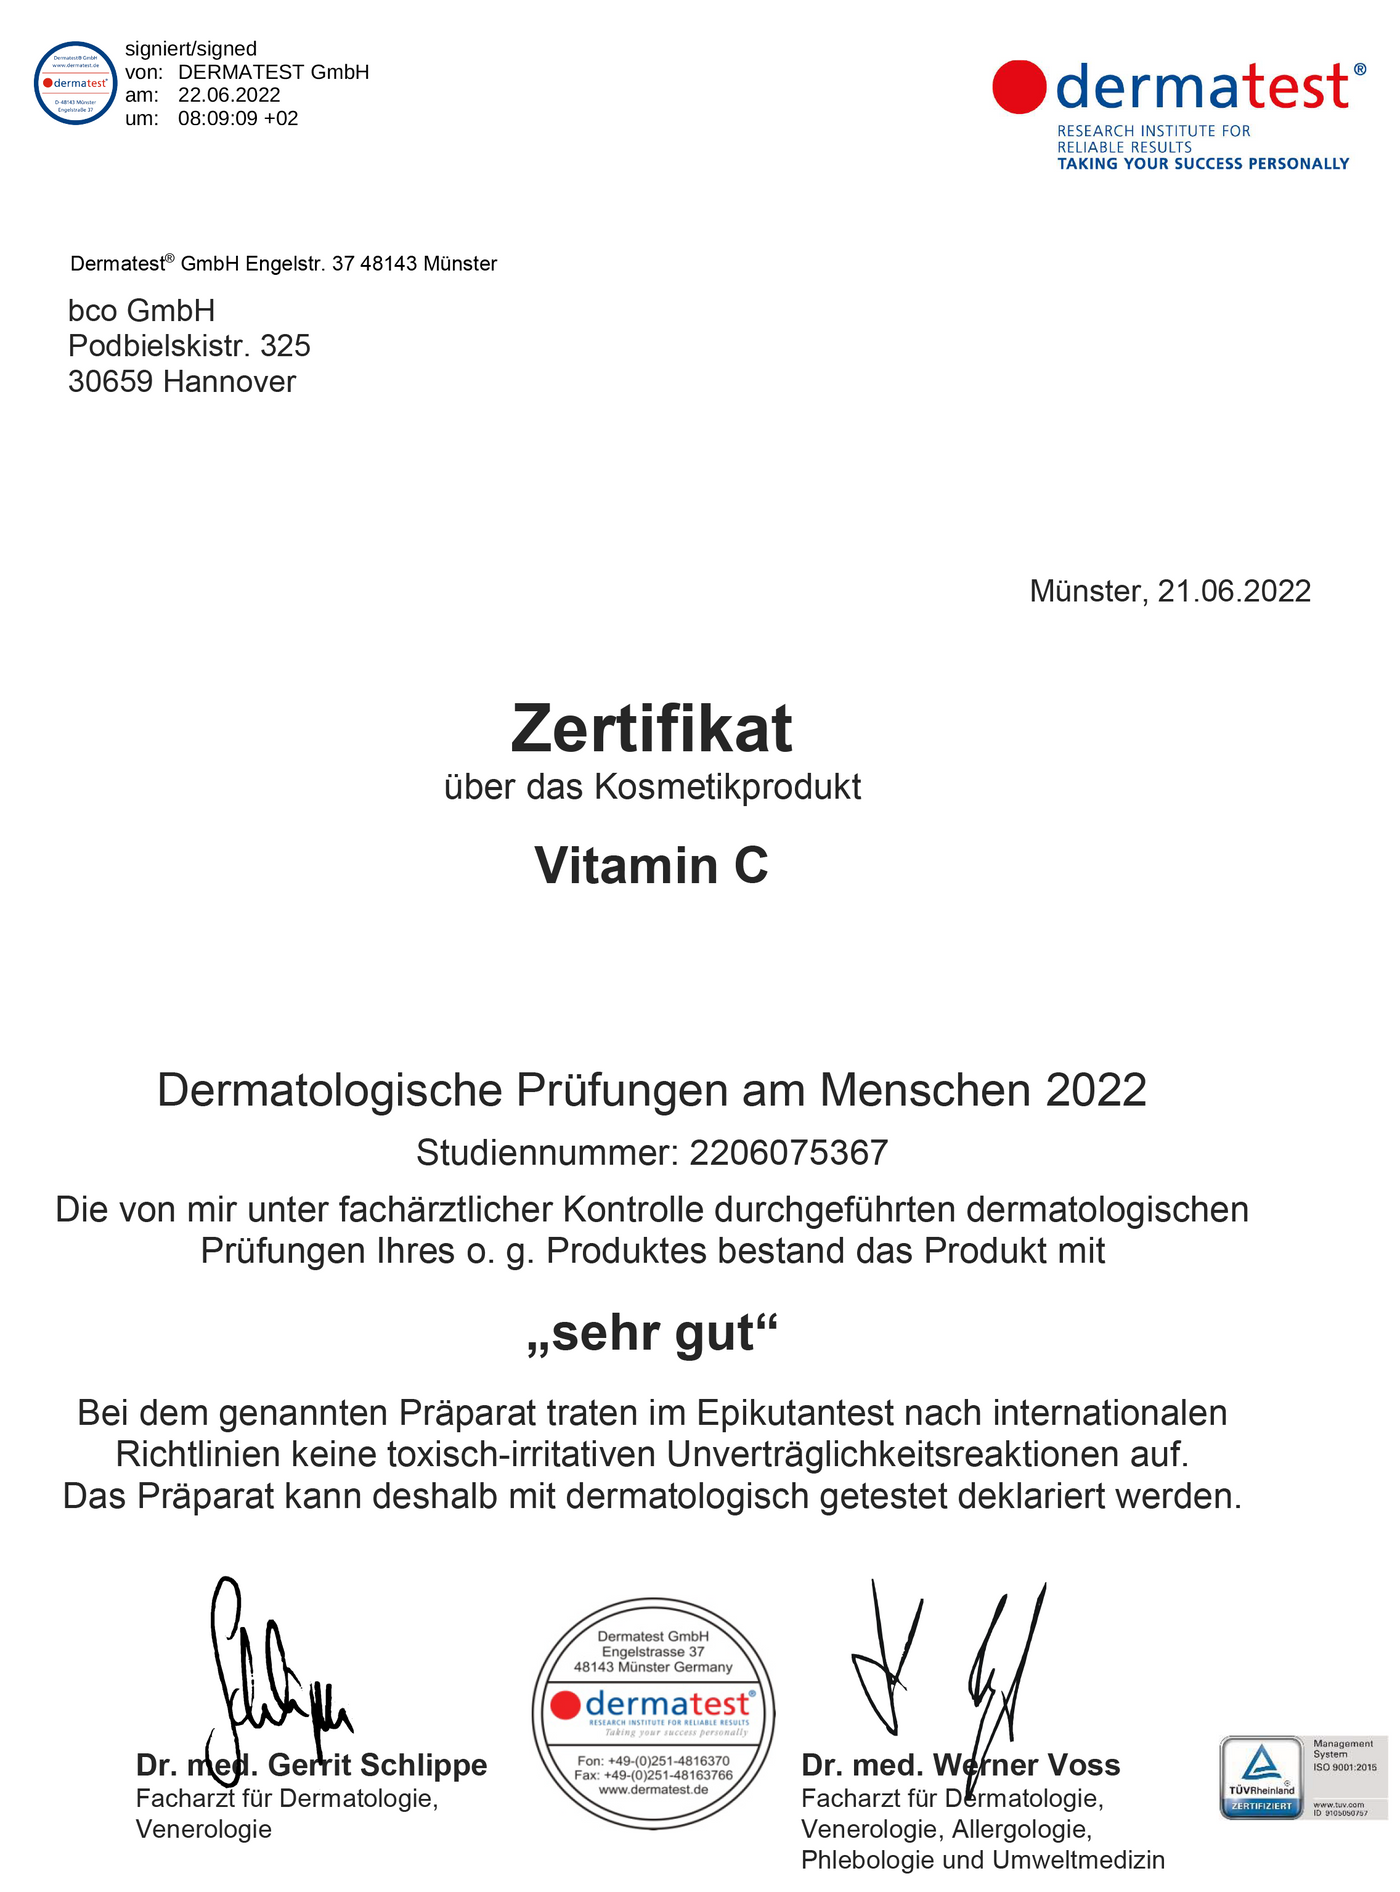 Dermatest Zertifikat vom Natürliche Hautpflege bco vitamin c